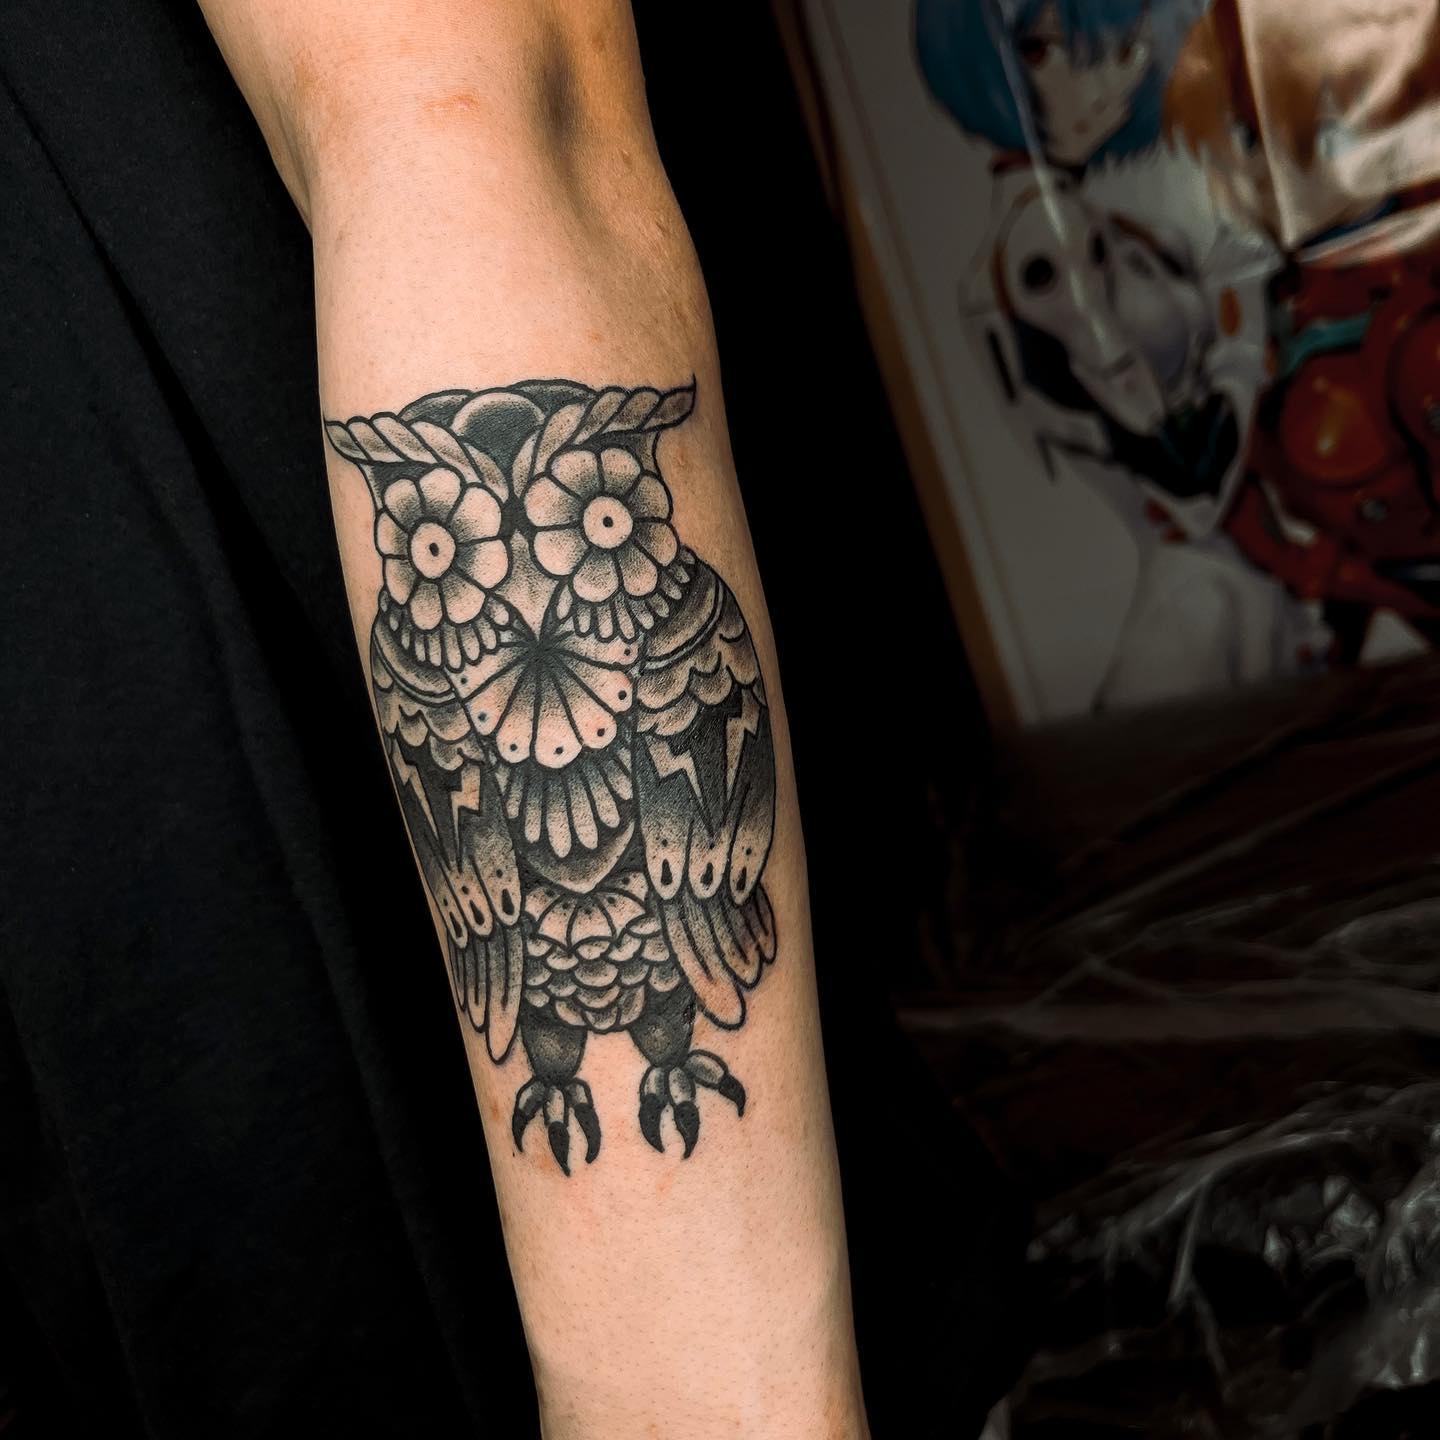 Tatuaje de búho en el brazo.